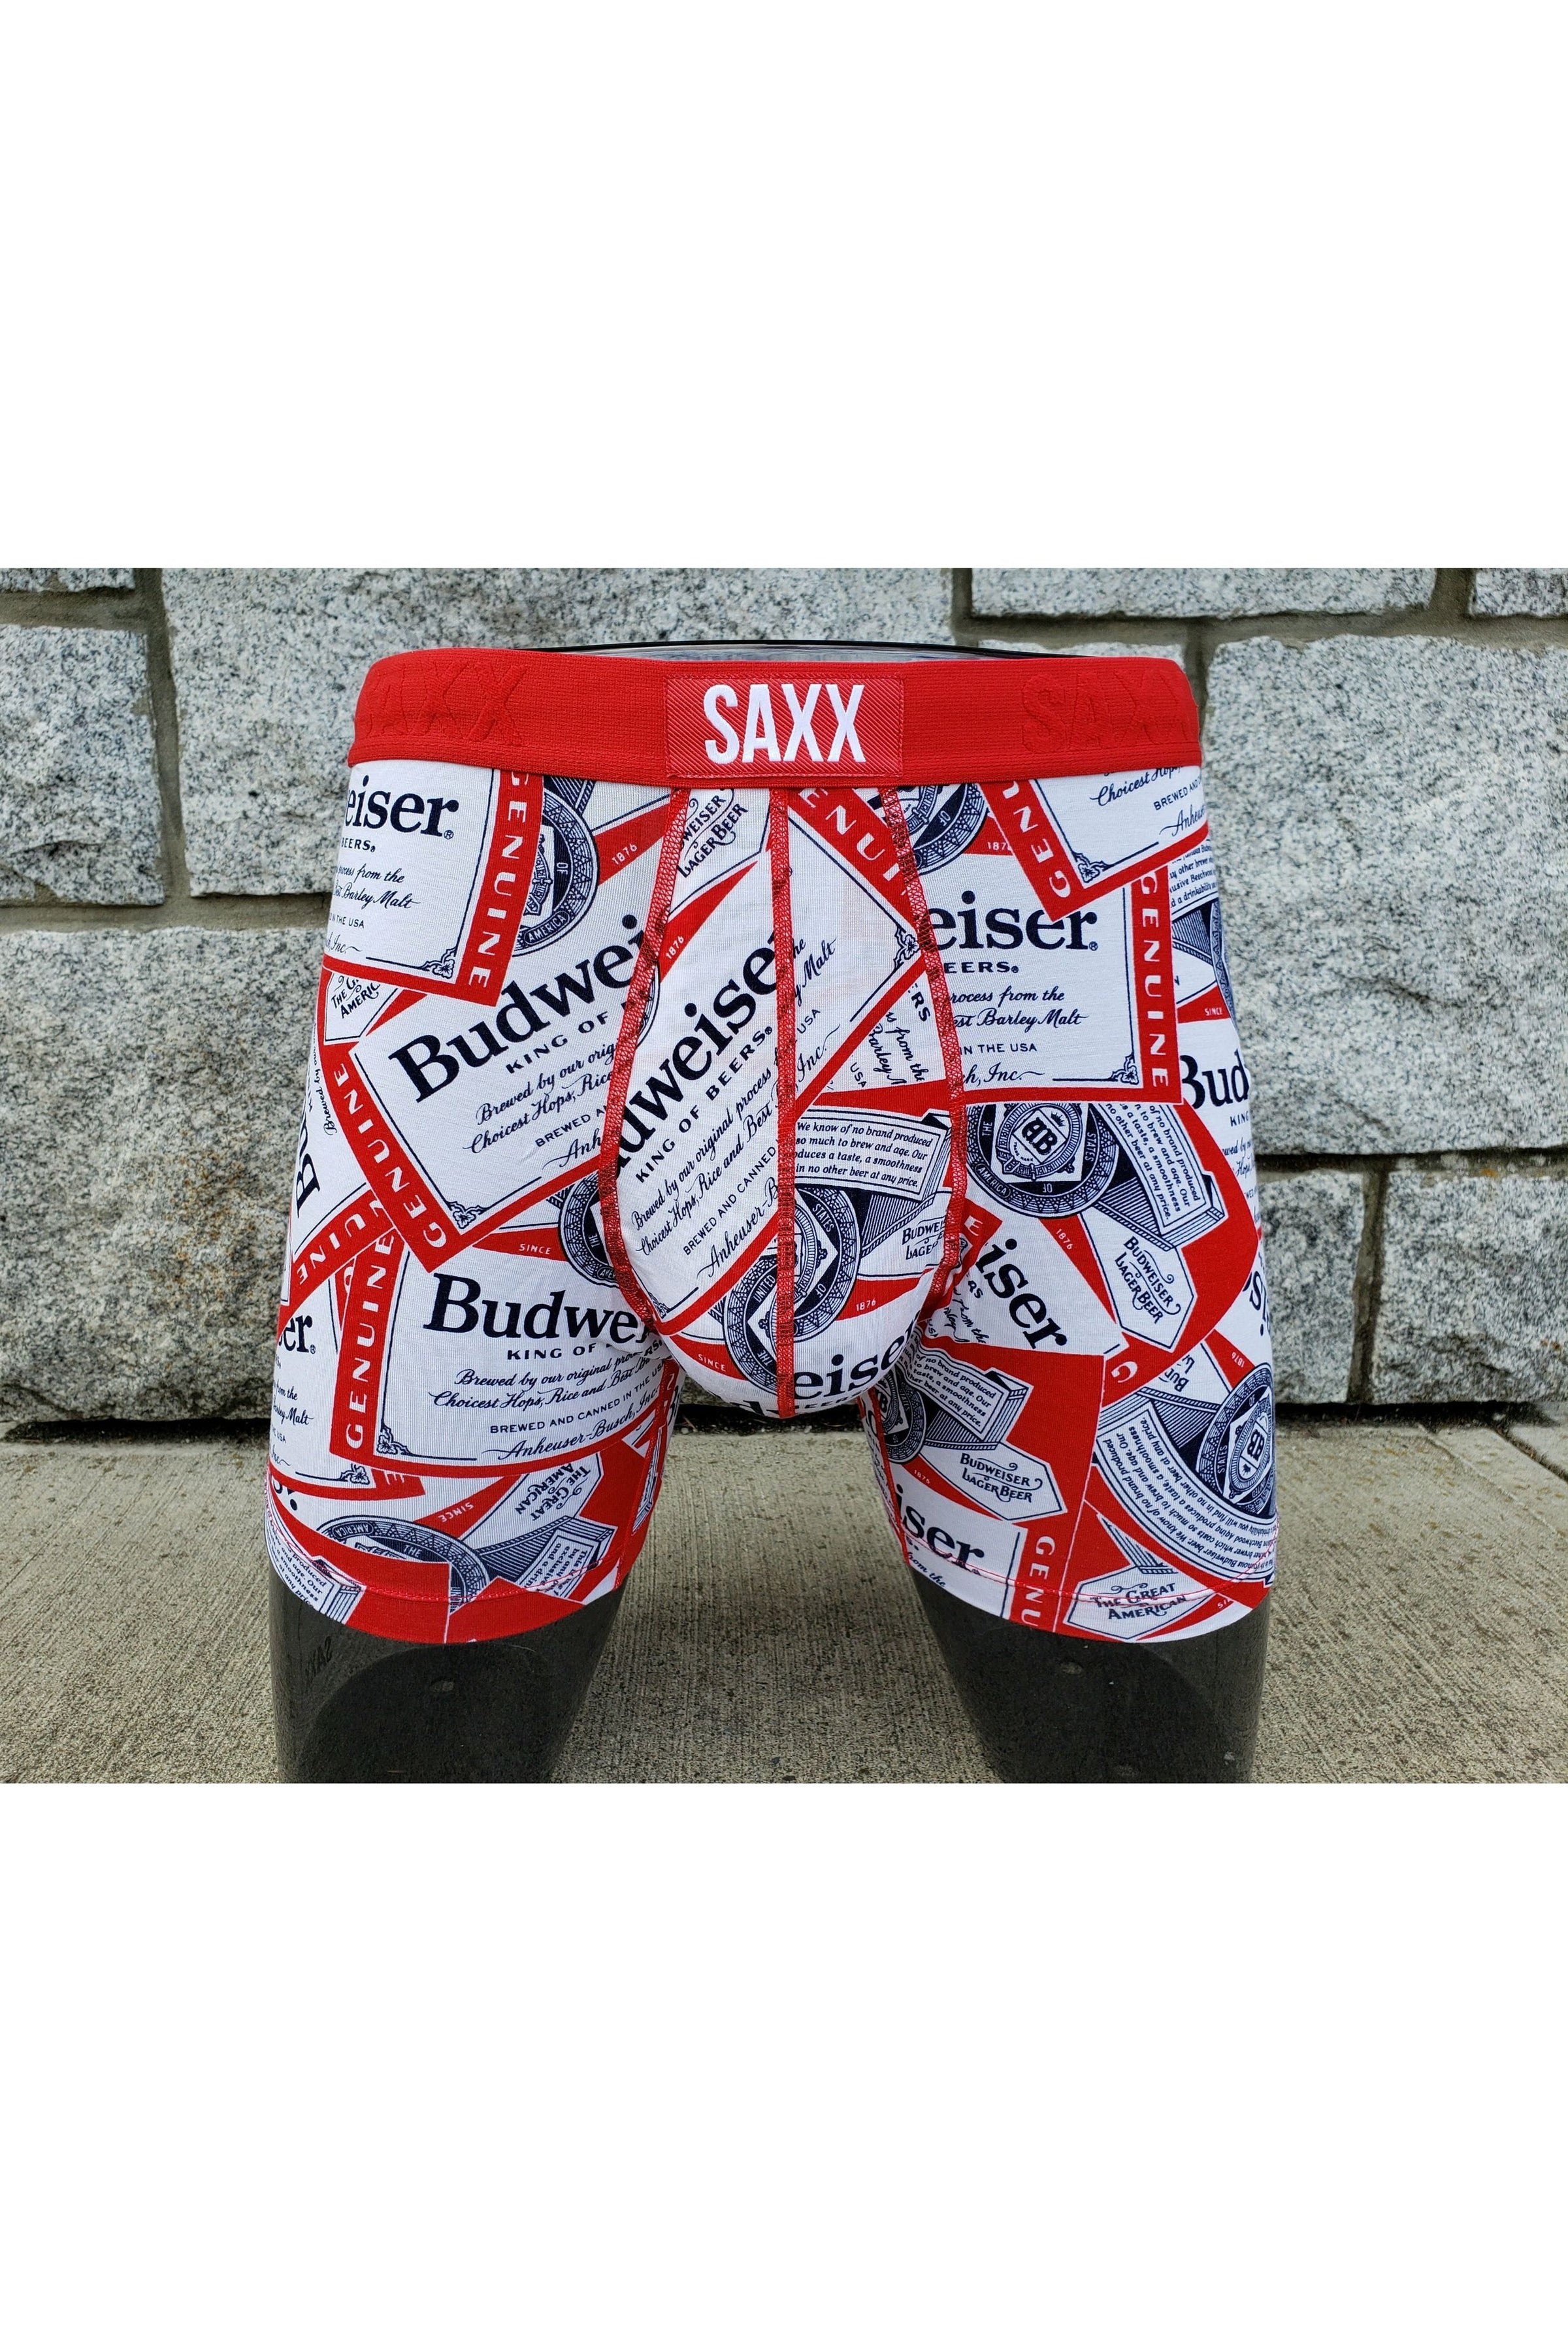 SAXX Ultra Boxer Brief *SALE* – Crimson Lingerie